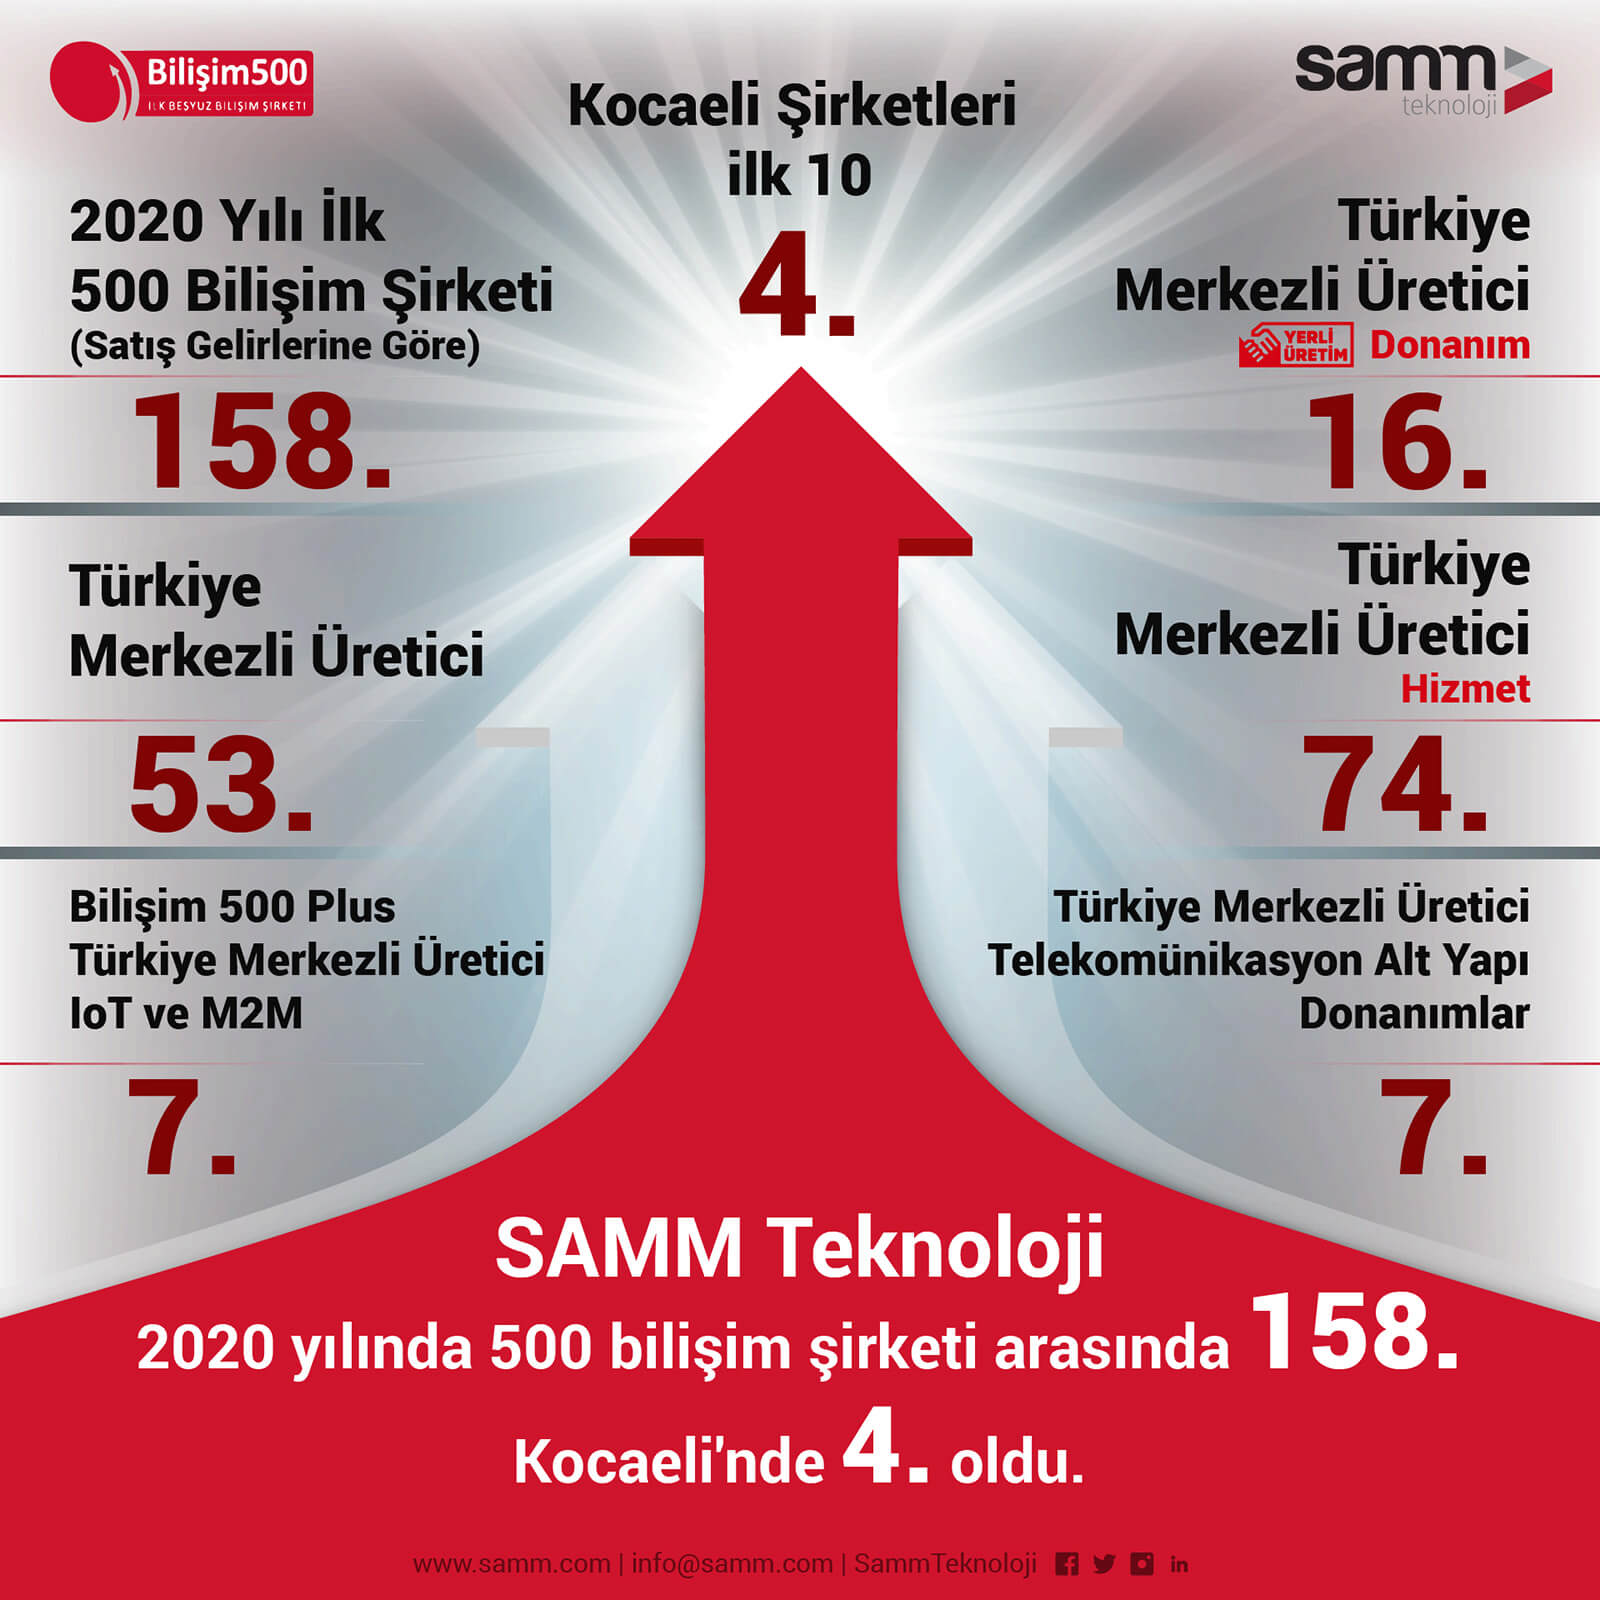 SAMM Teknoloji, Kocaeli Merkezli Bilişim Şirketleri Arasında 4. Sırada